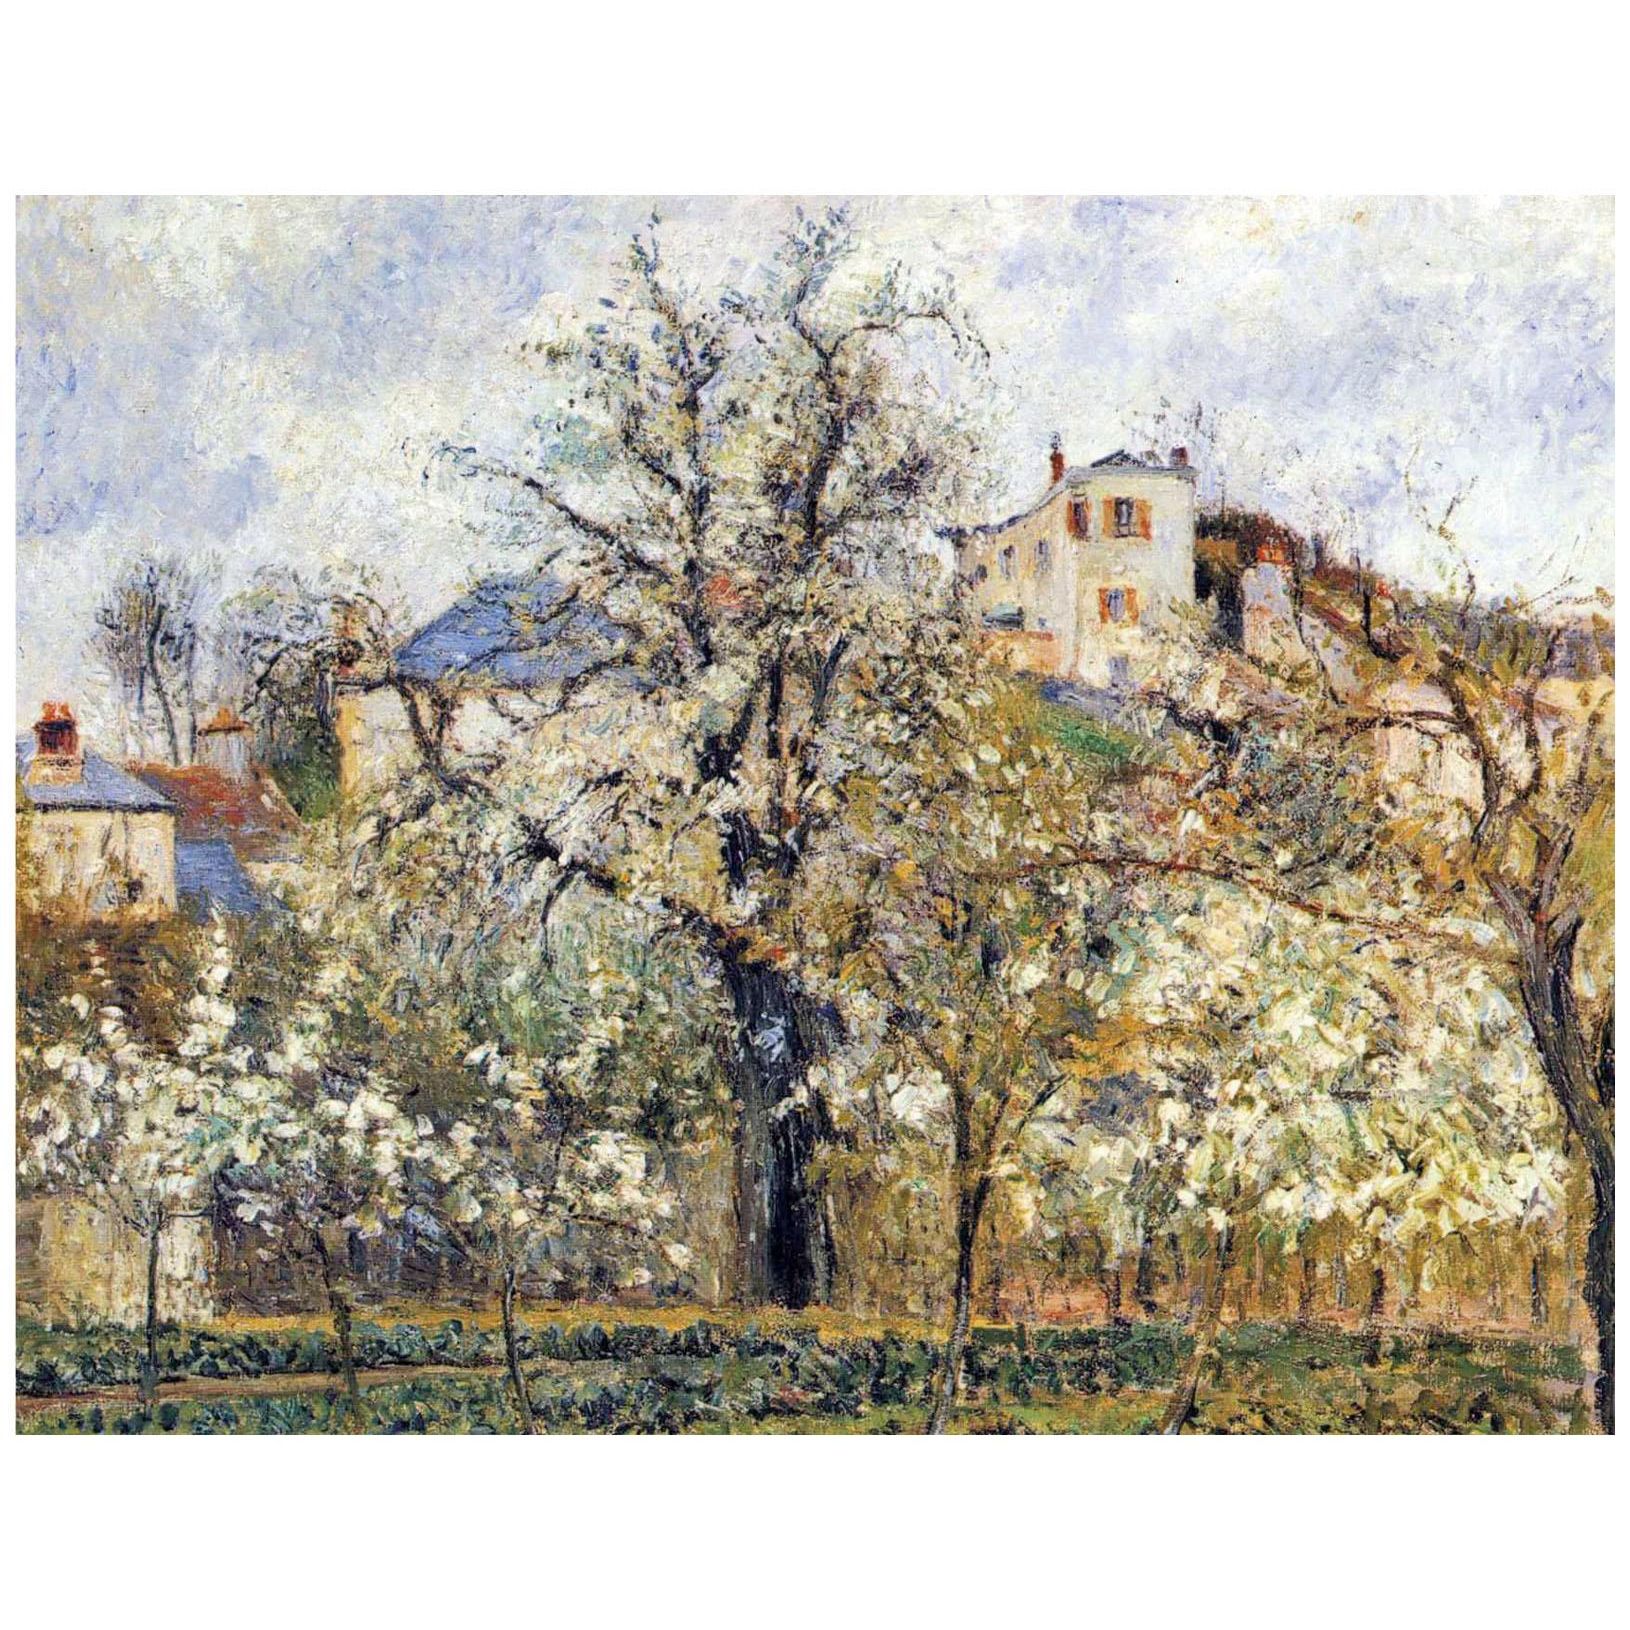 Camille Pissarro. Verger avec des arbres en fleurs. 1877. Musee d’Orsay Paris